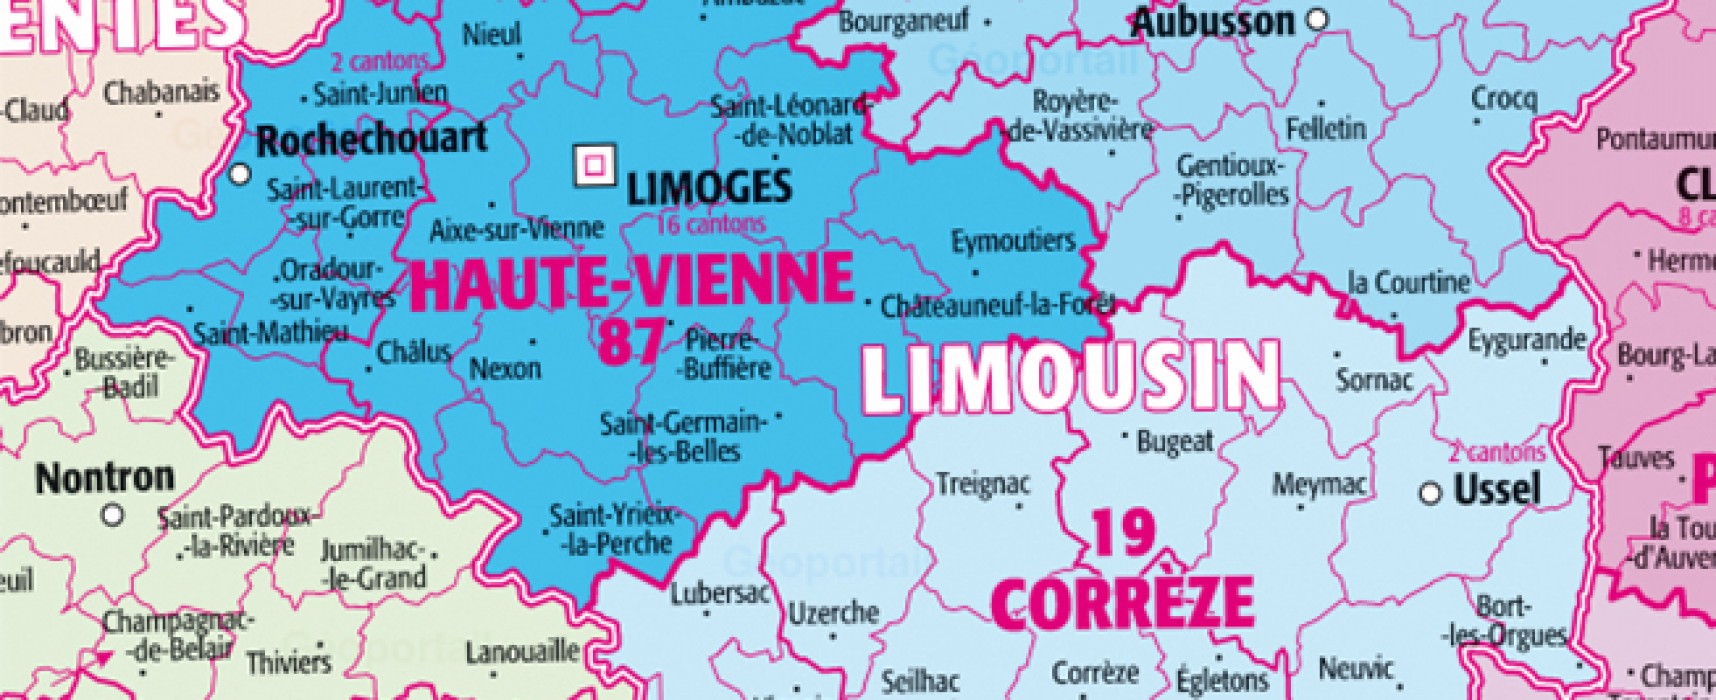 Le Limousin, une région où il fait bon vivre